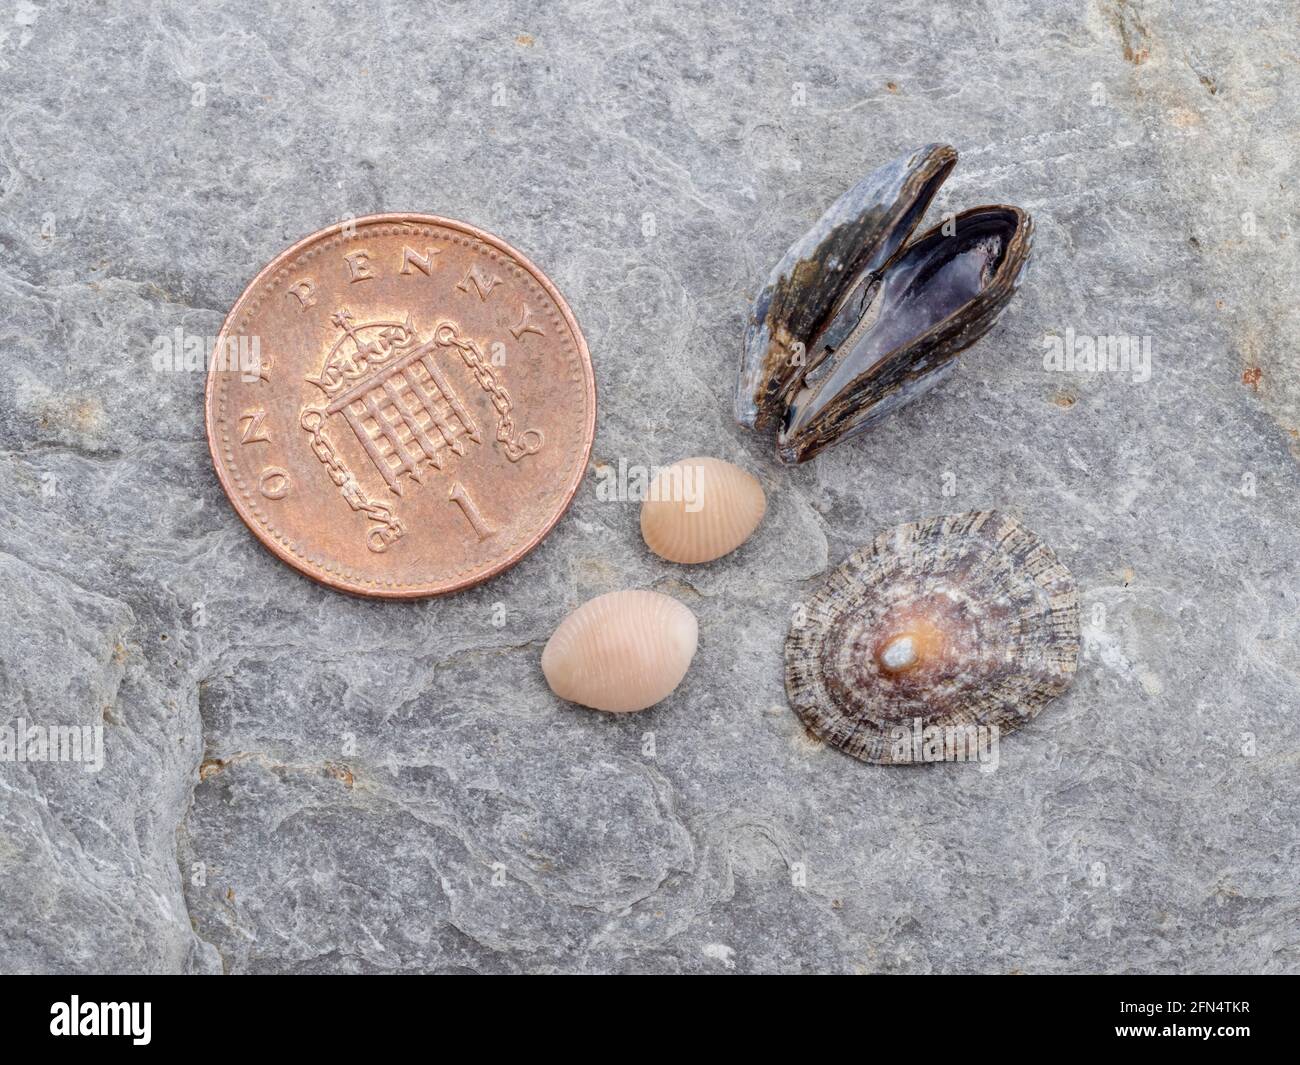 Pequeñas conchas marinas encontradas en la playa de North Devon, incluyendo Trivia arctica, la cowrie norteña. Foto de stock